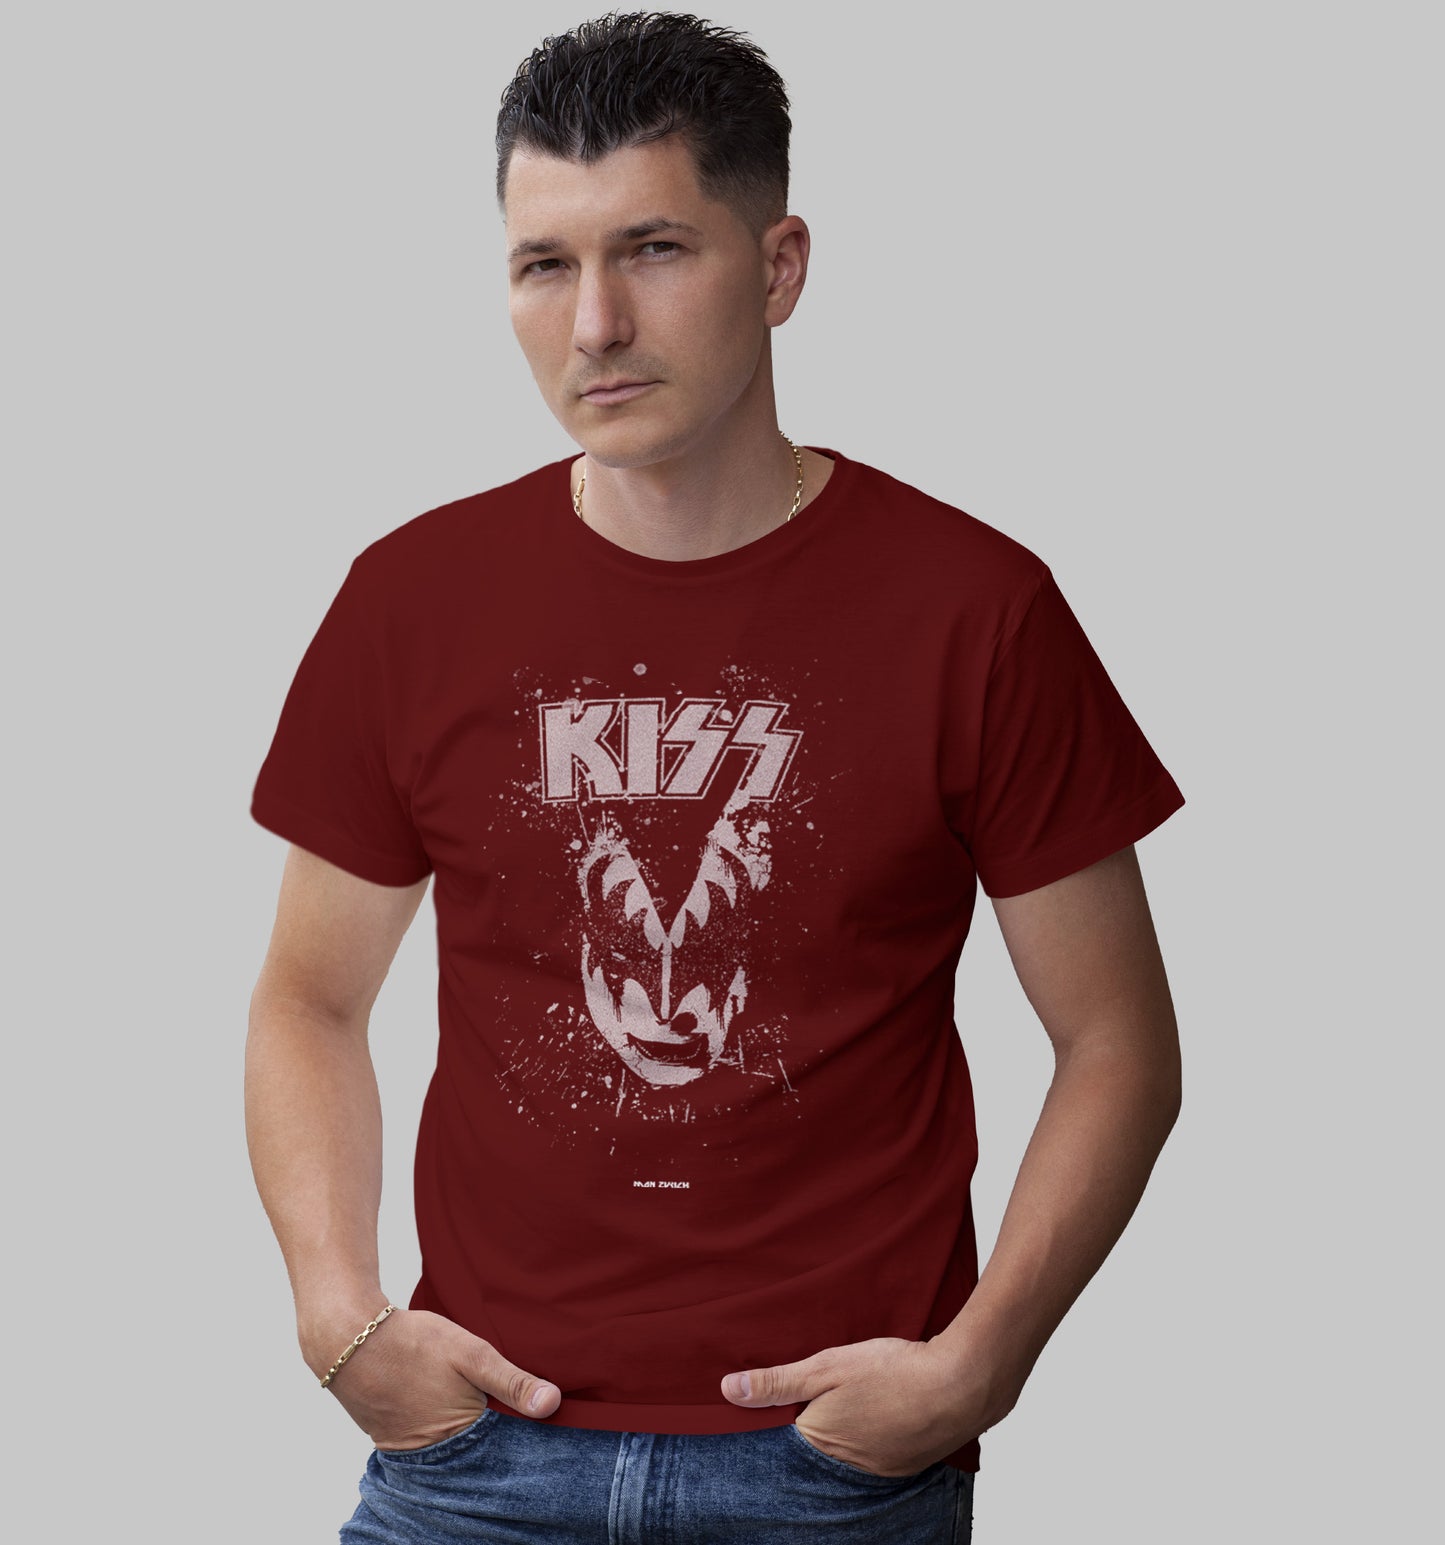 KISS BLK T-shirt in Dark - Mon Zurich Originals